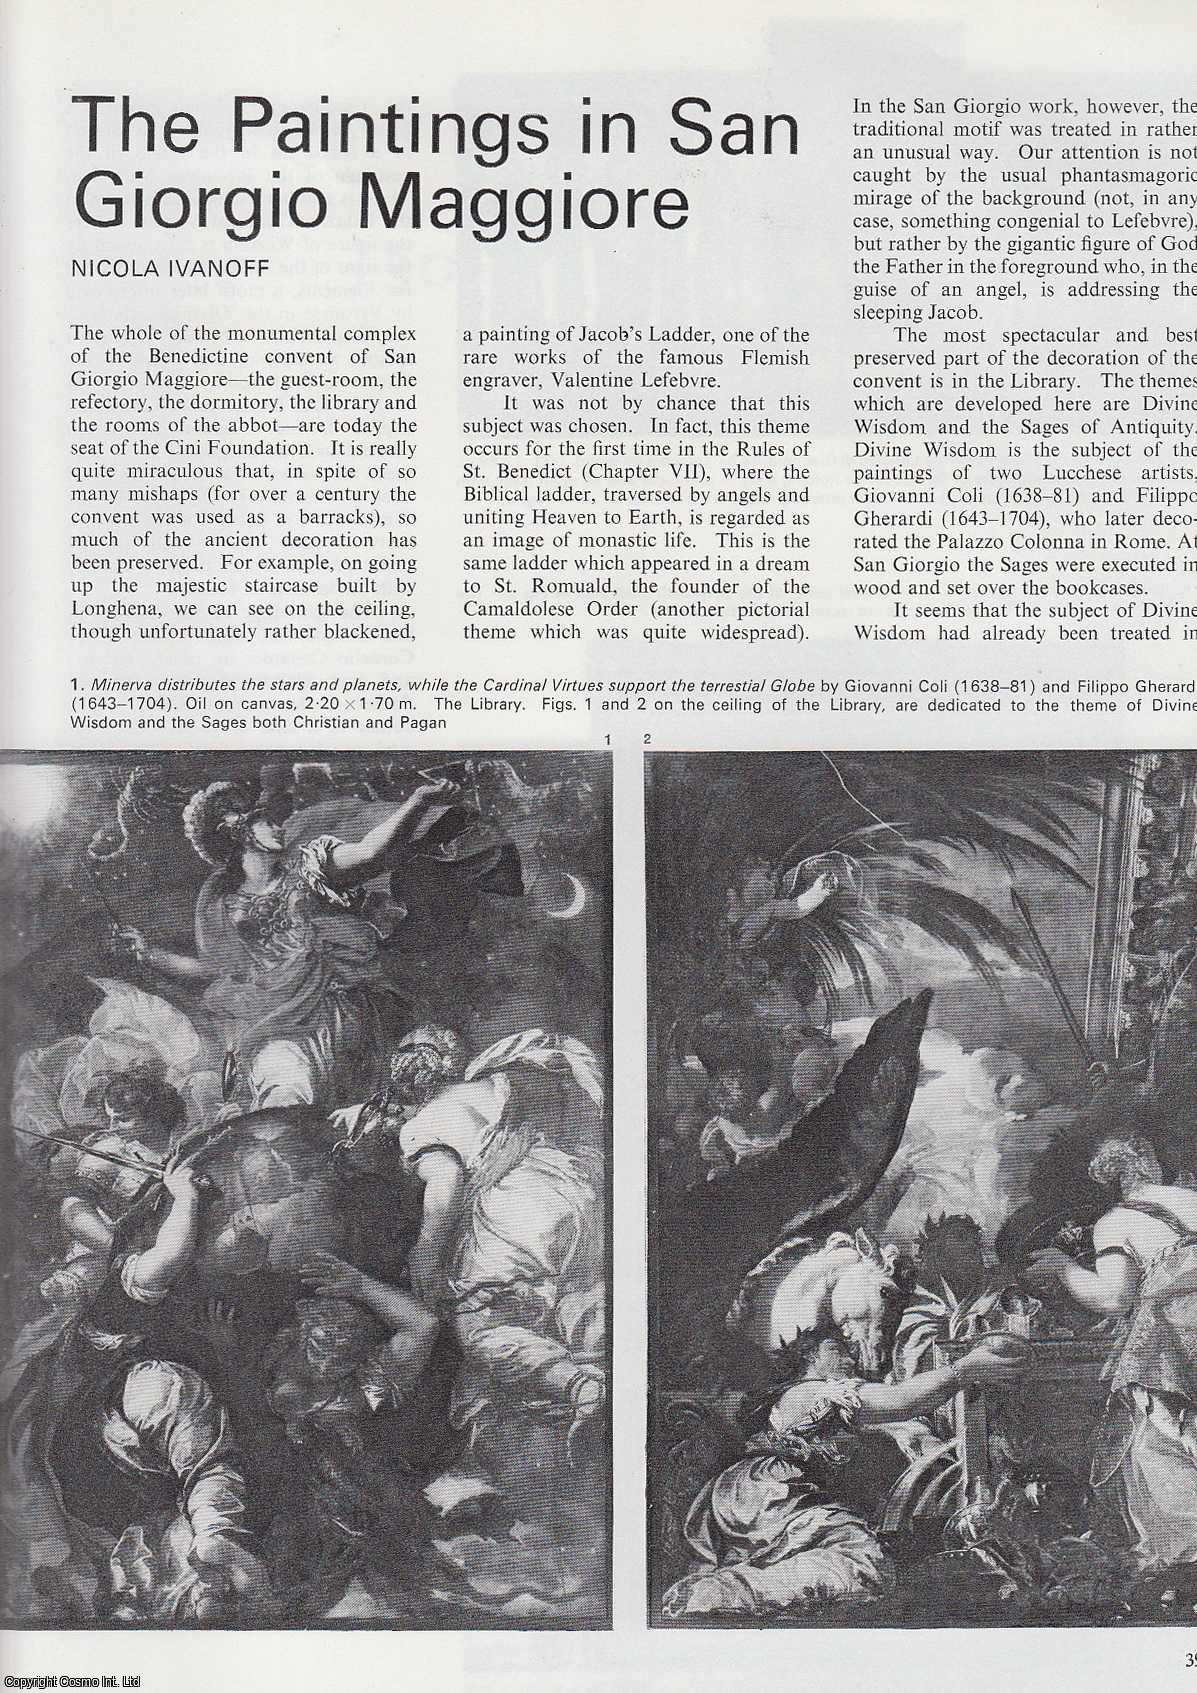 Nicola Ivanoff - The Paintings in San Giorgio Maggiore. An uncommon original article from Apollo, the Magazine of the Arts, 1976.